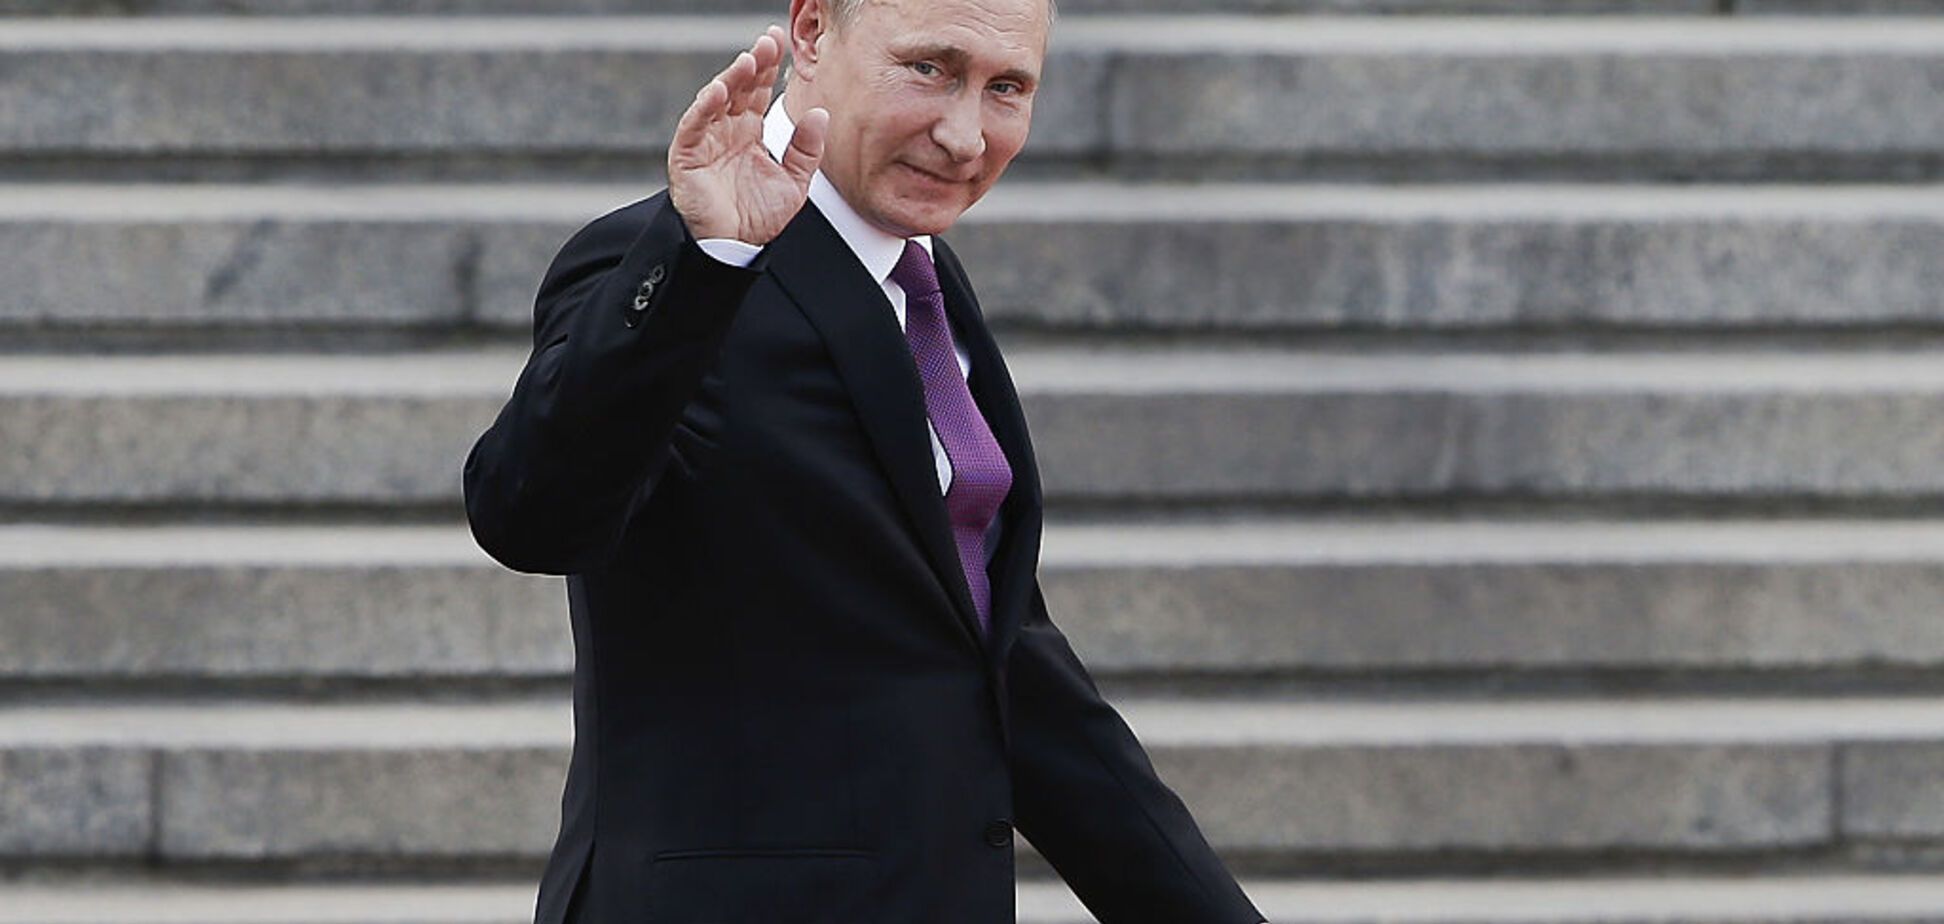 Виграв вибори на підборах: в мережі яскраво висміяли велич Путіна